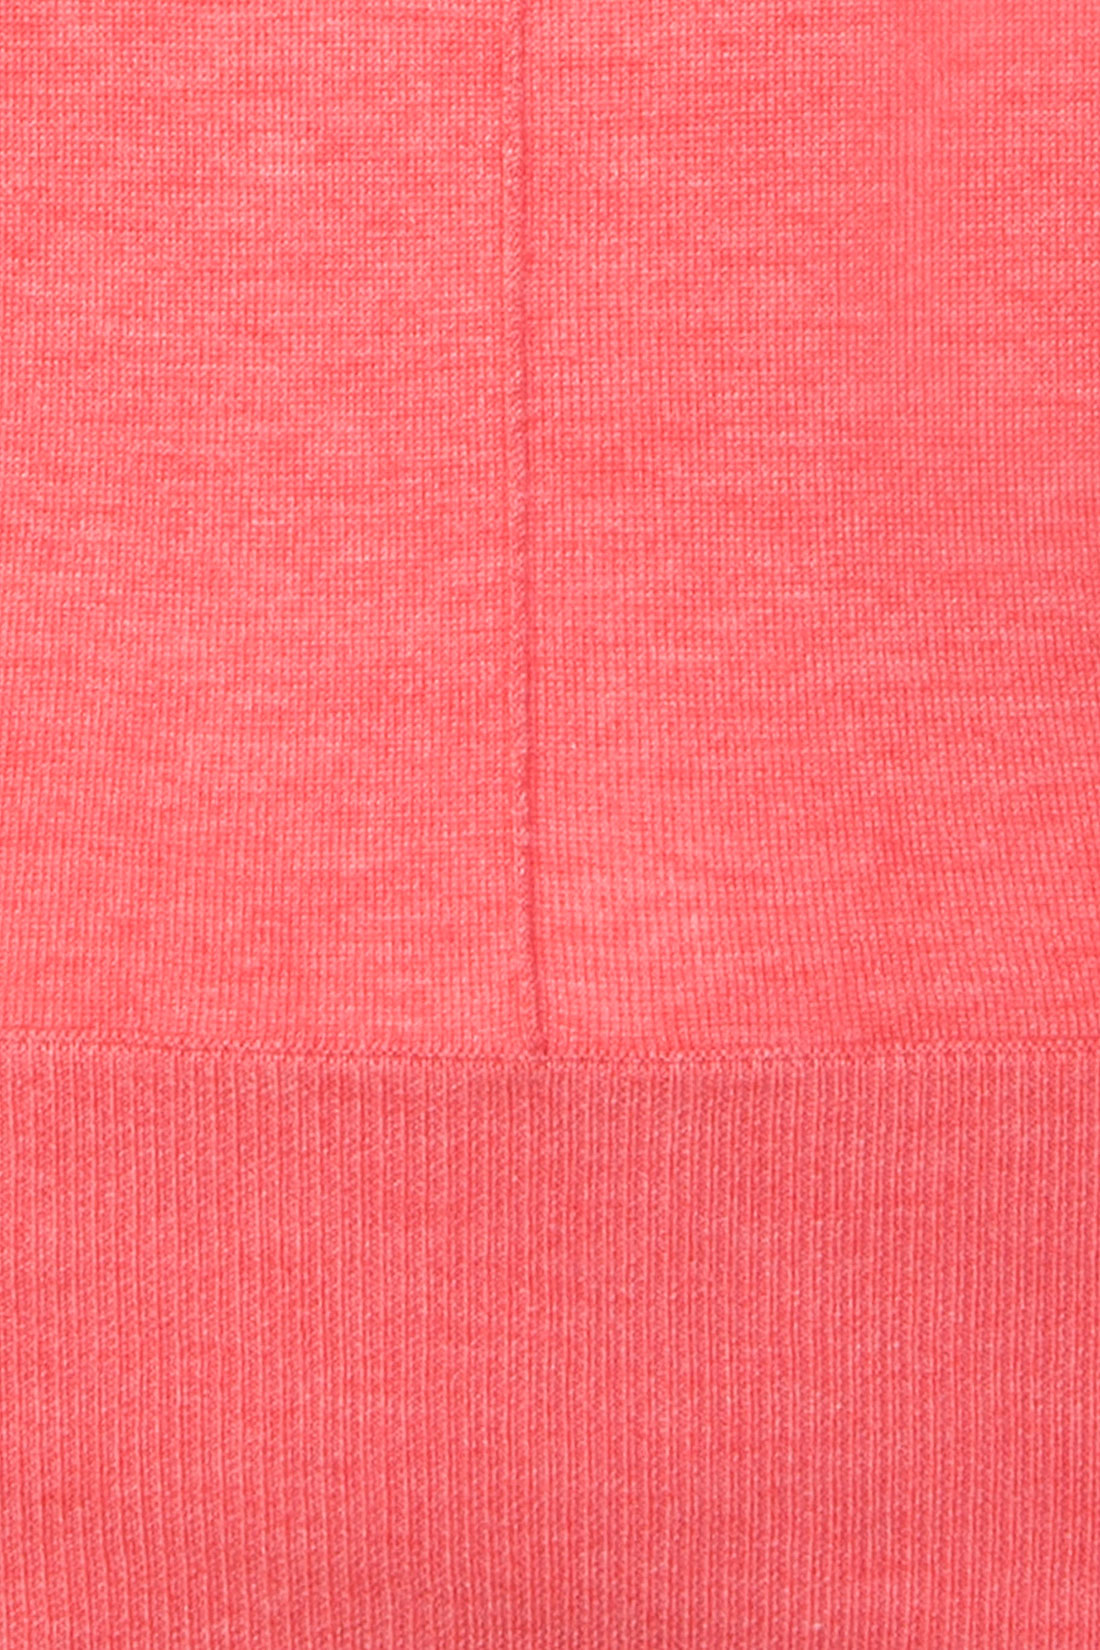 Джемпер с контрастной спинкой (арт. baon B137037), размер L, цвет белый Джемпер с контрастной спинкой (арт. baon B137037) - фото 3